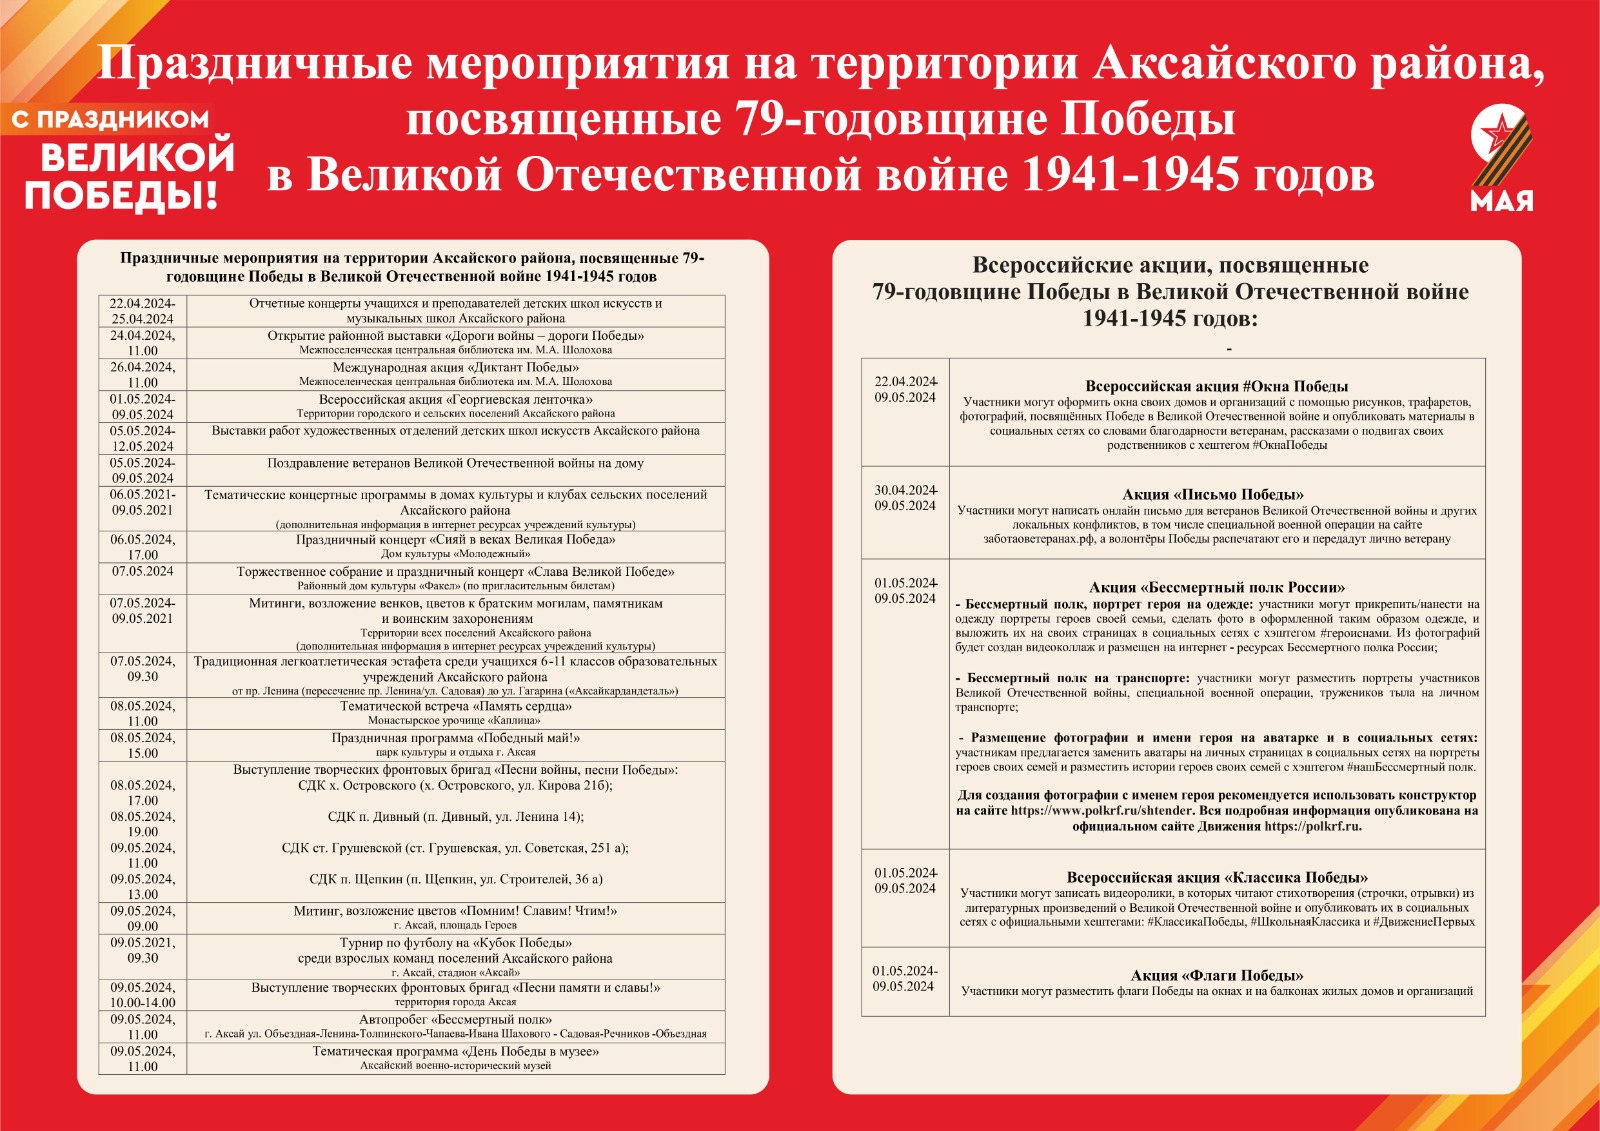 Праздничные мероприятия на территории Аксайского района, посвященные79-годовщине Победы в Великой Отечественной войне 1941-1945 годов.